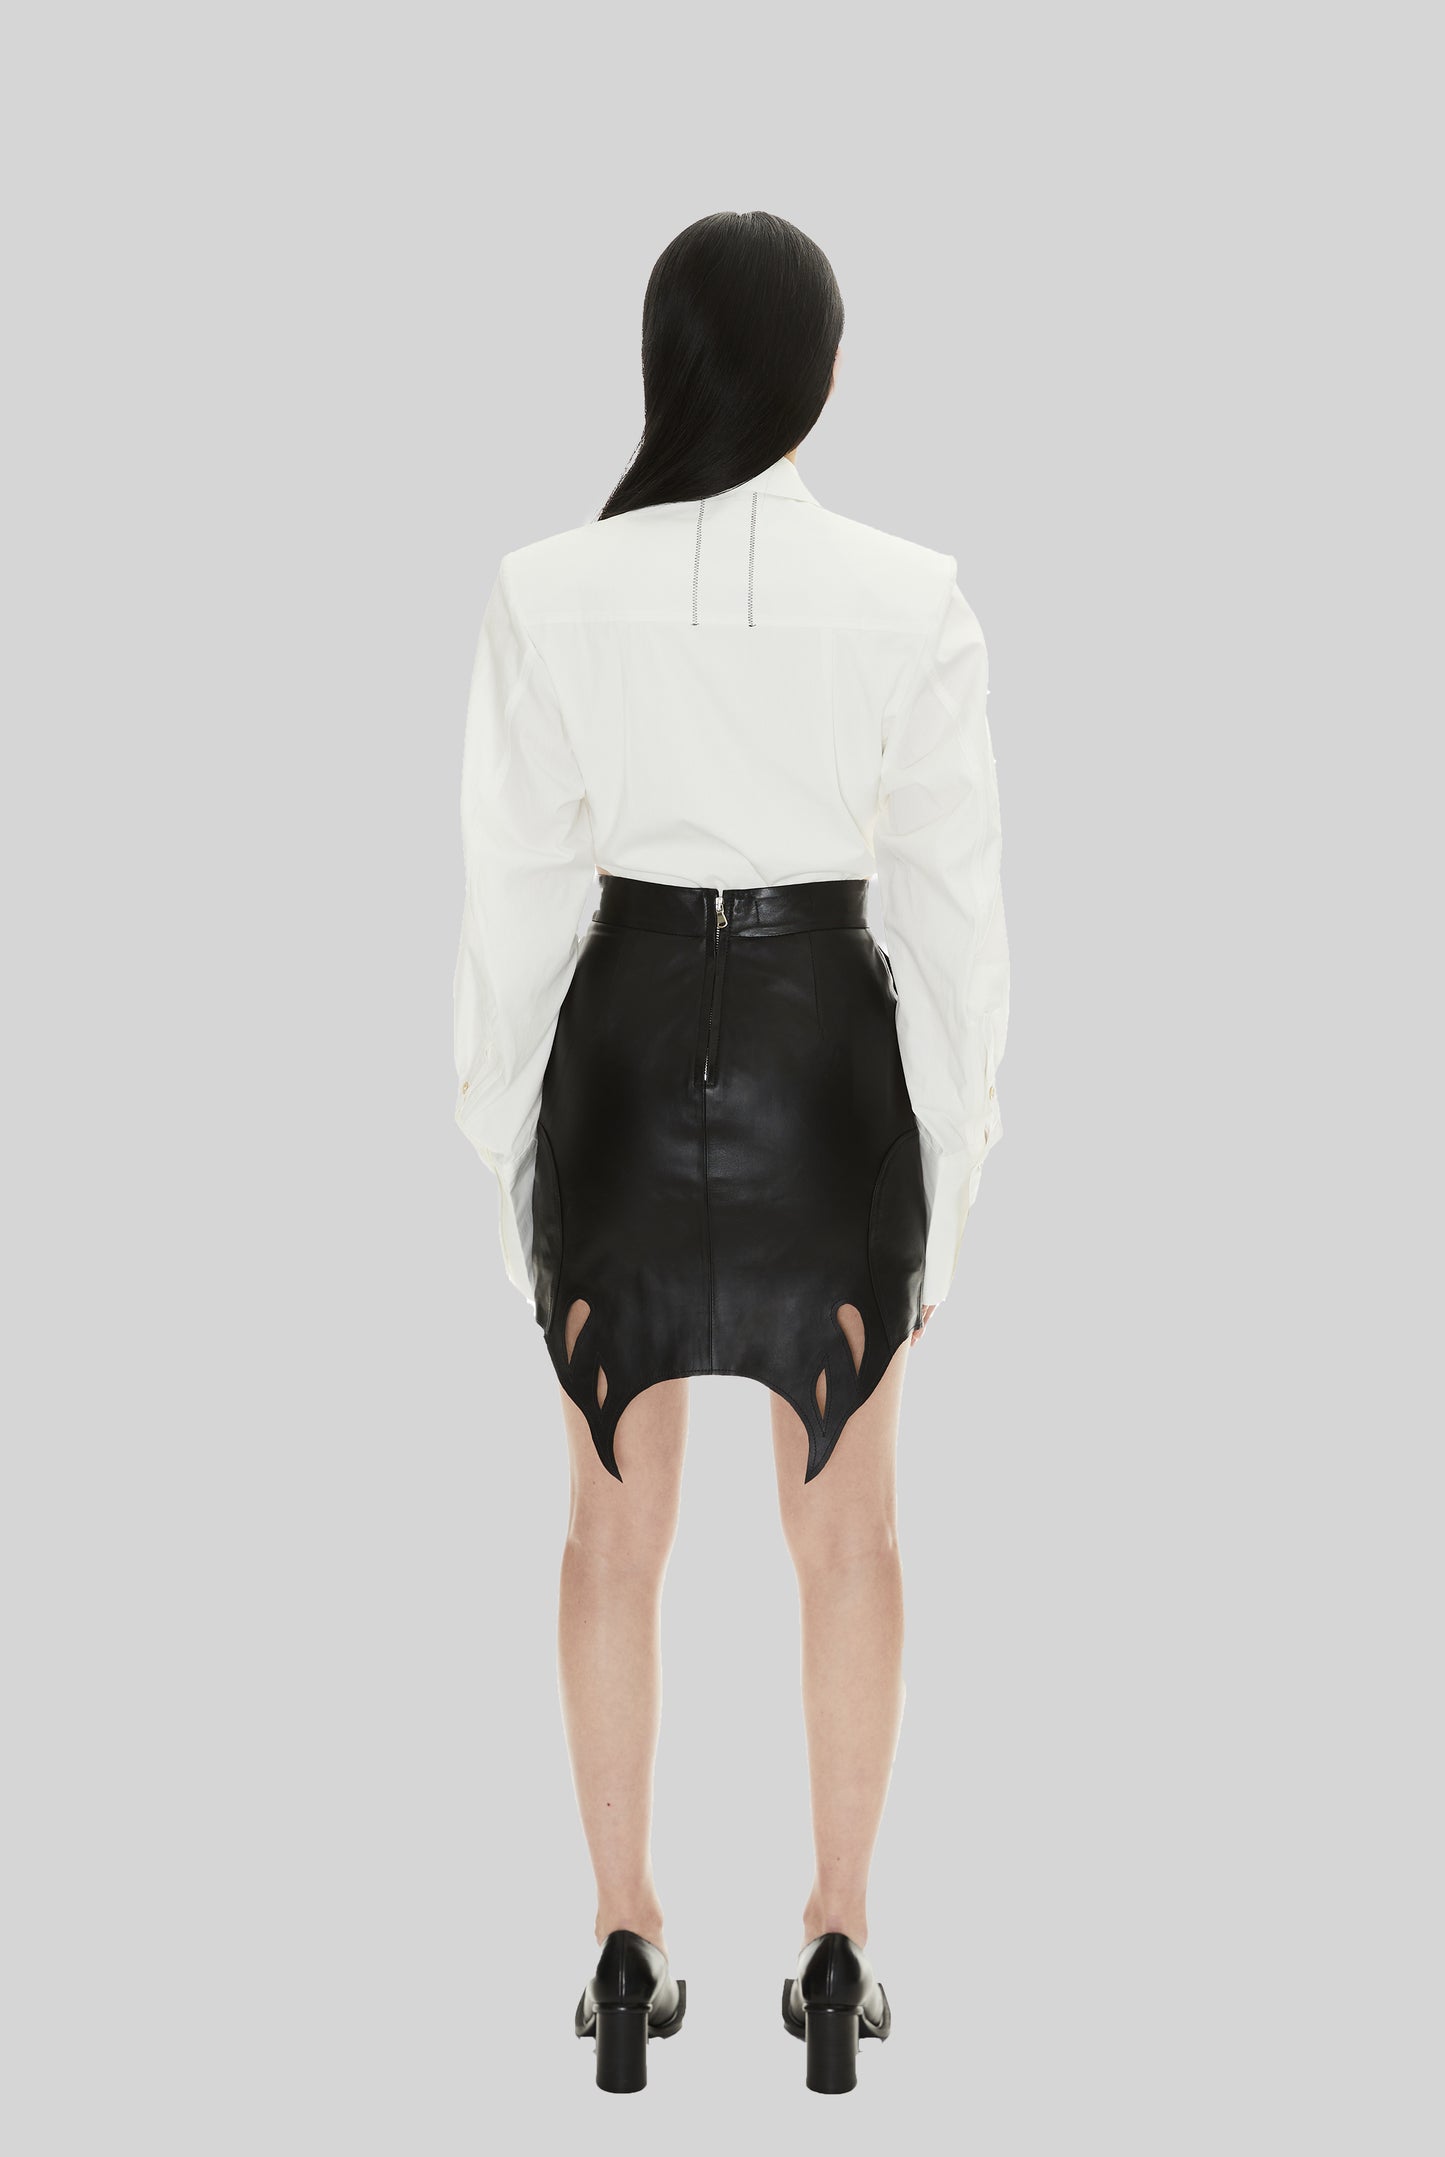 Silene Skirt in Black Leather